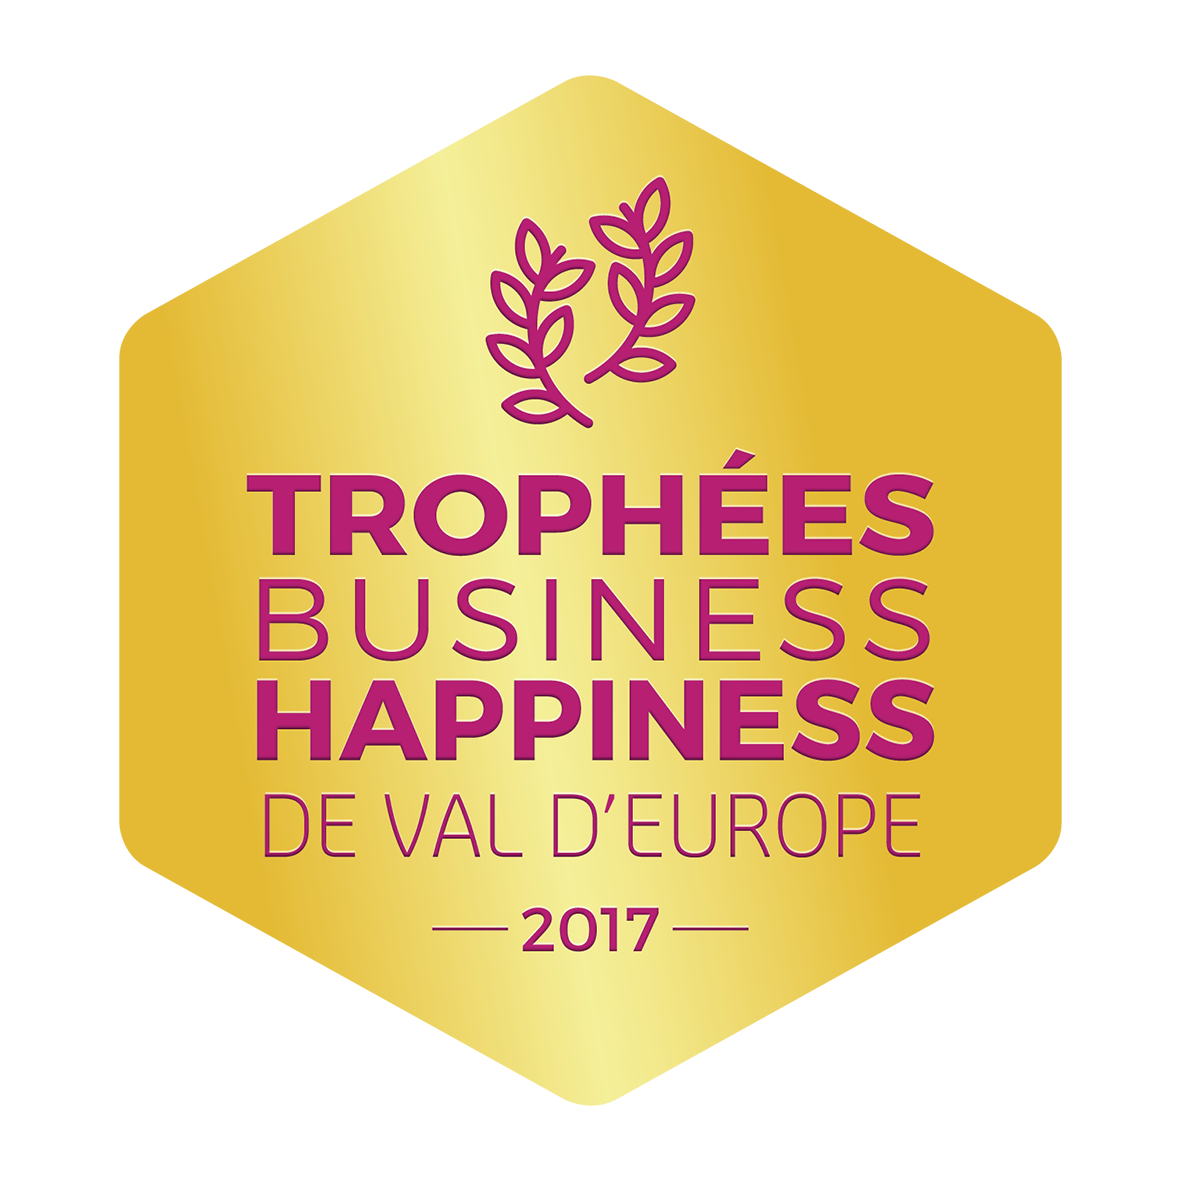 Les Trophées Business Happiness de Val d'Europe